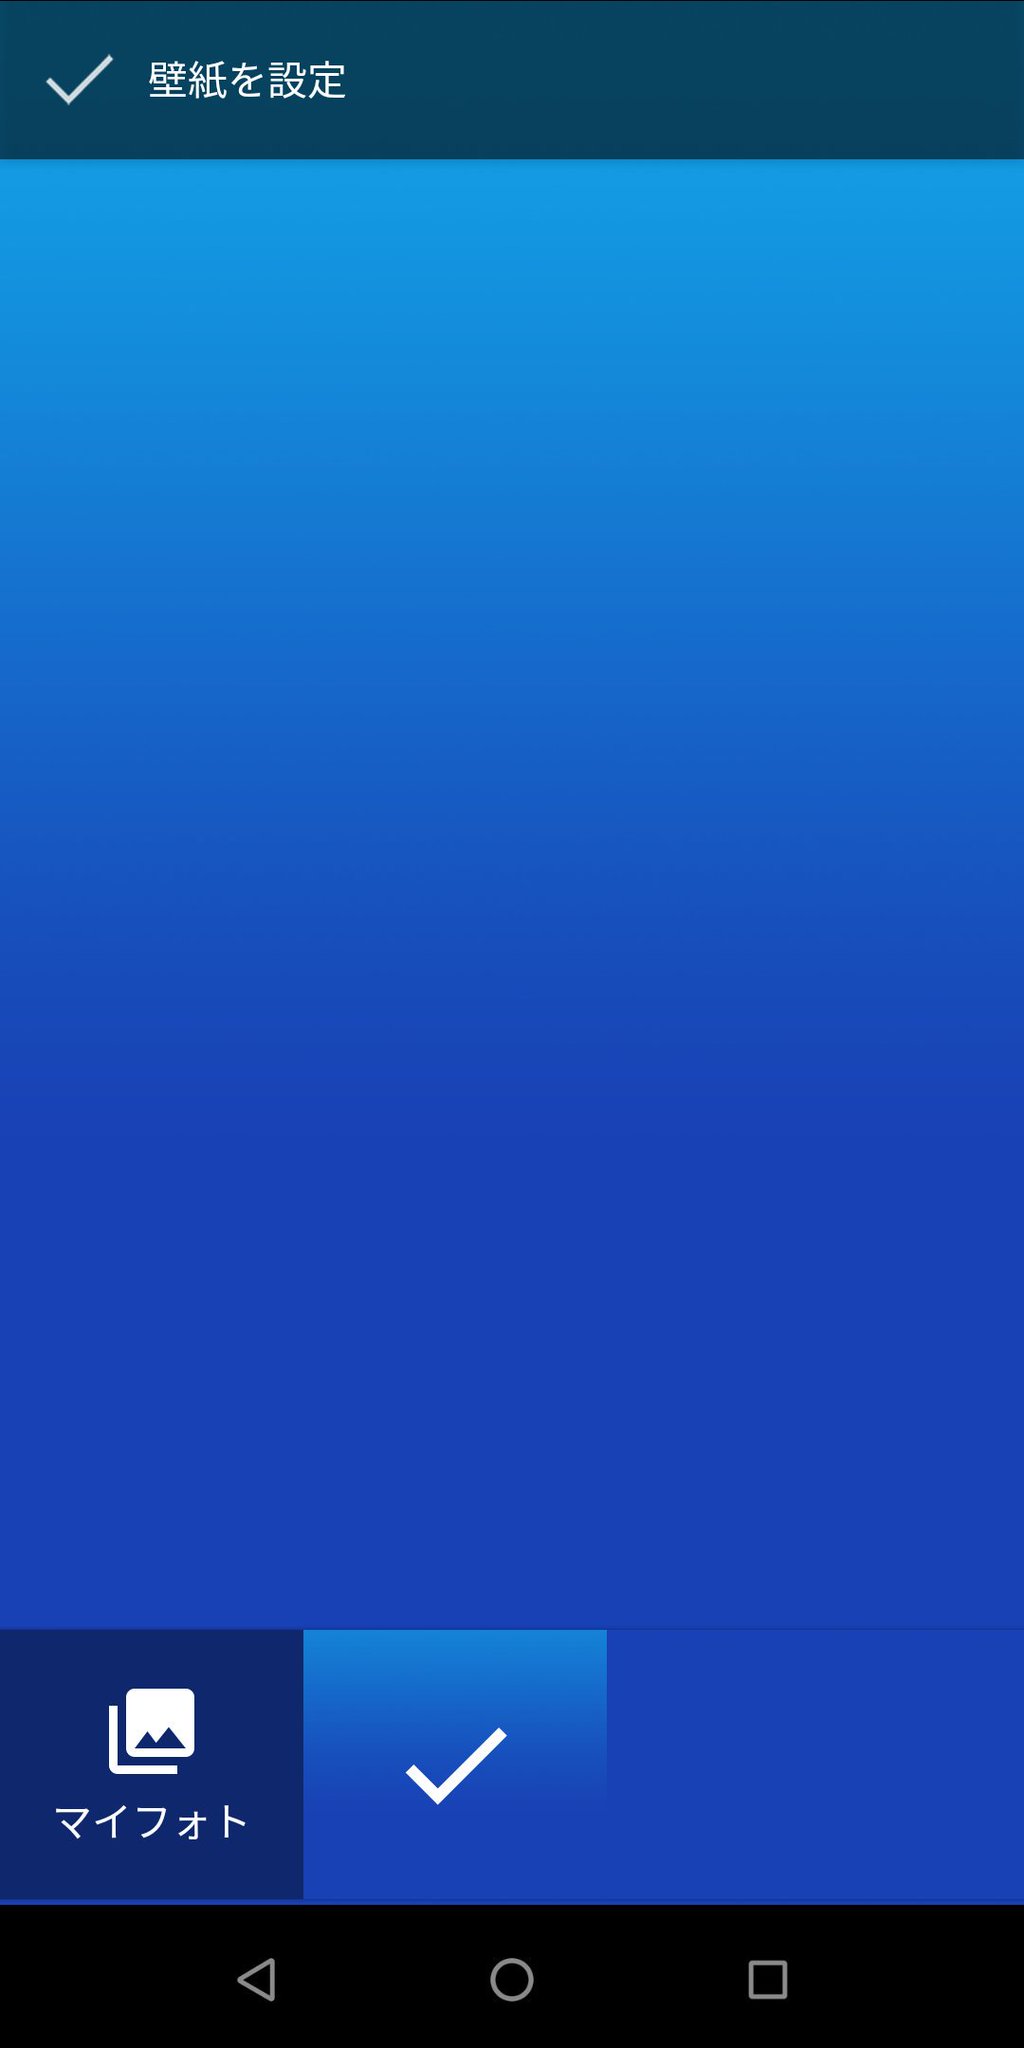 Asus好きのzenblog Zenfone Max Pro M1の壁紙 この青いの1枚しか入ってない ミニマリスト感すごい